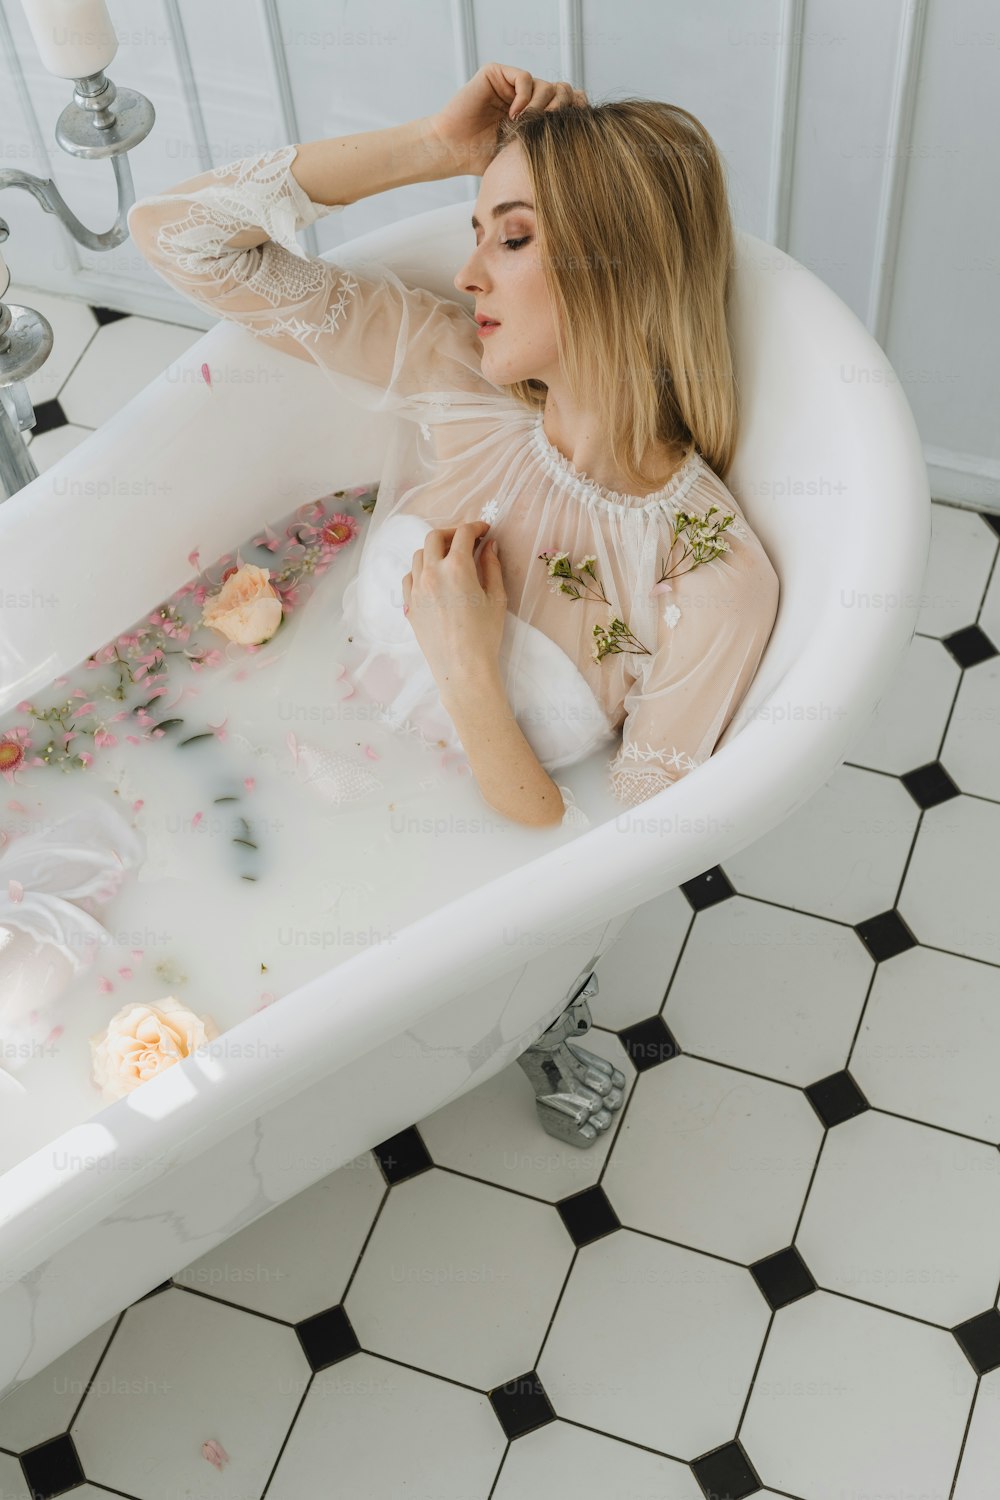 花がいっぱいに置かれた浴槽に座ってい�る女性